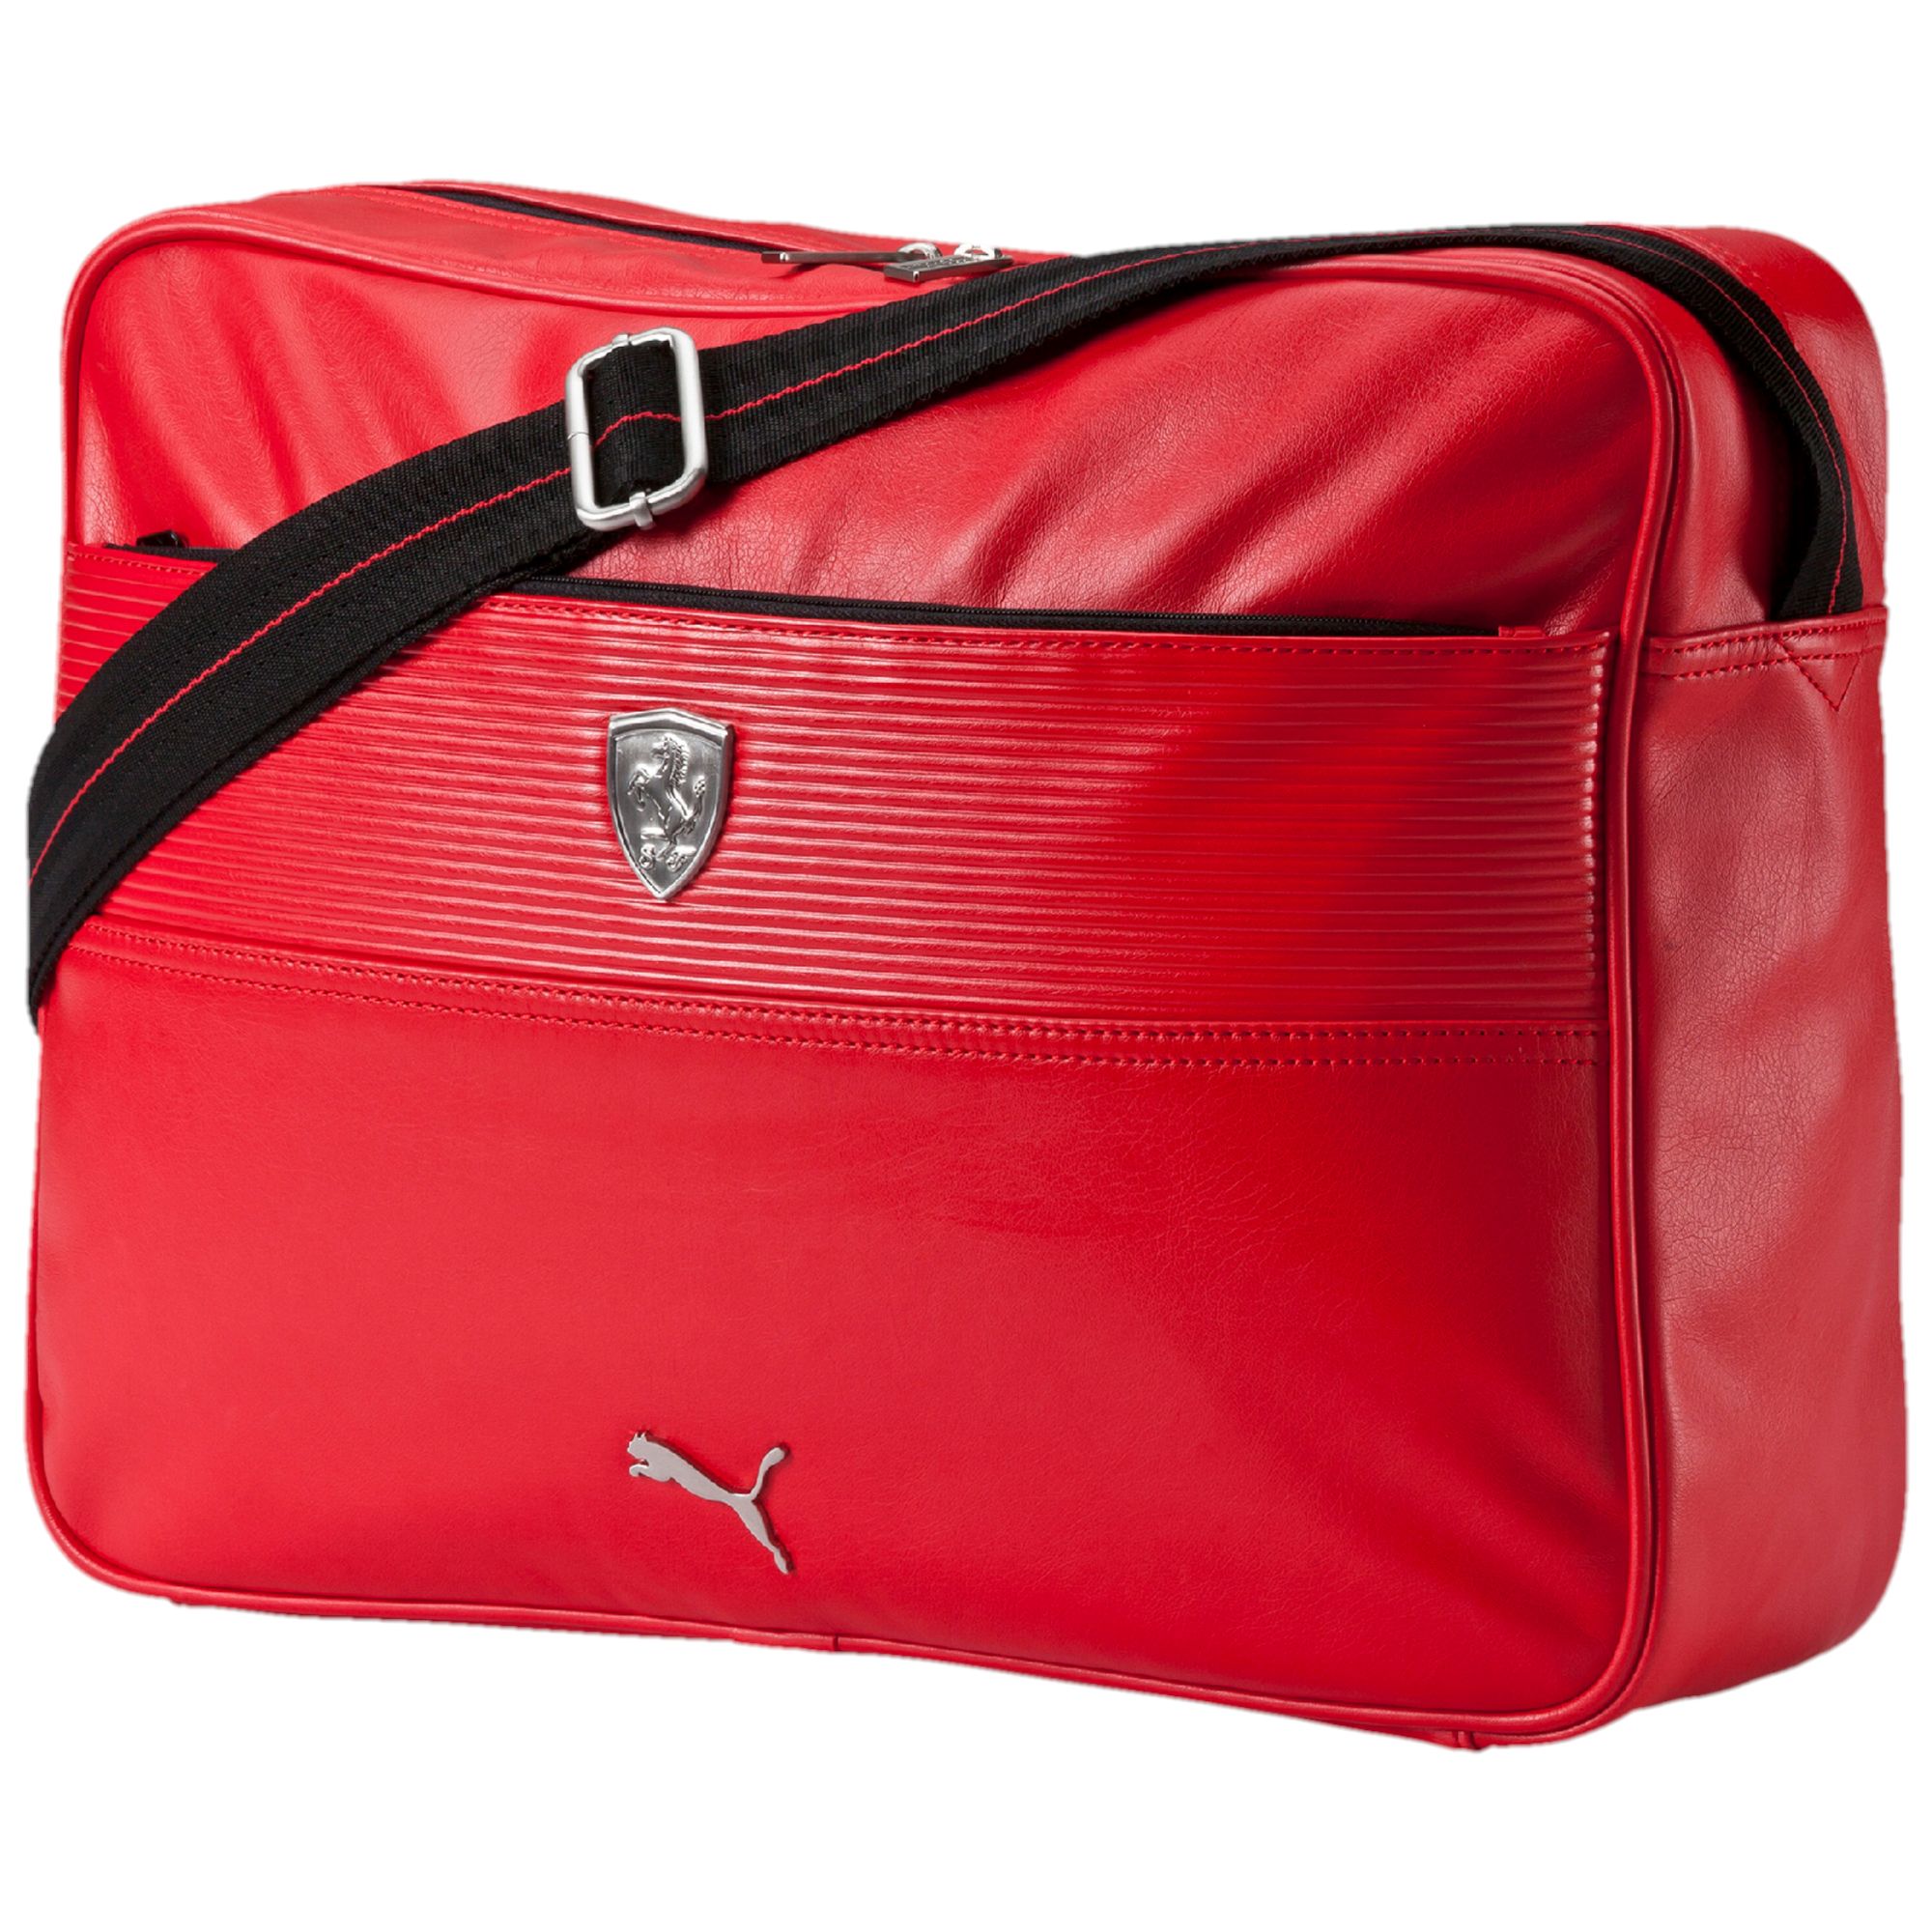 PUMA Ferrari Reporter Shoulder Bag New | eBay